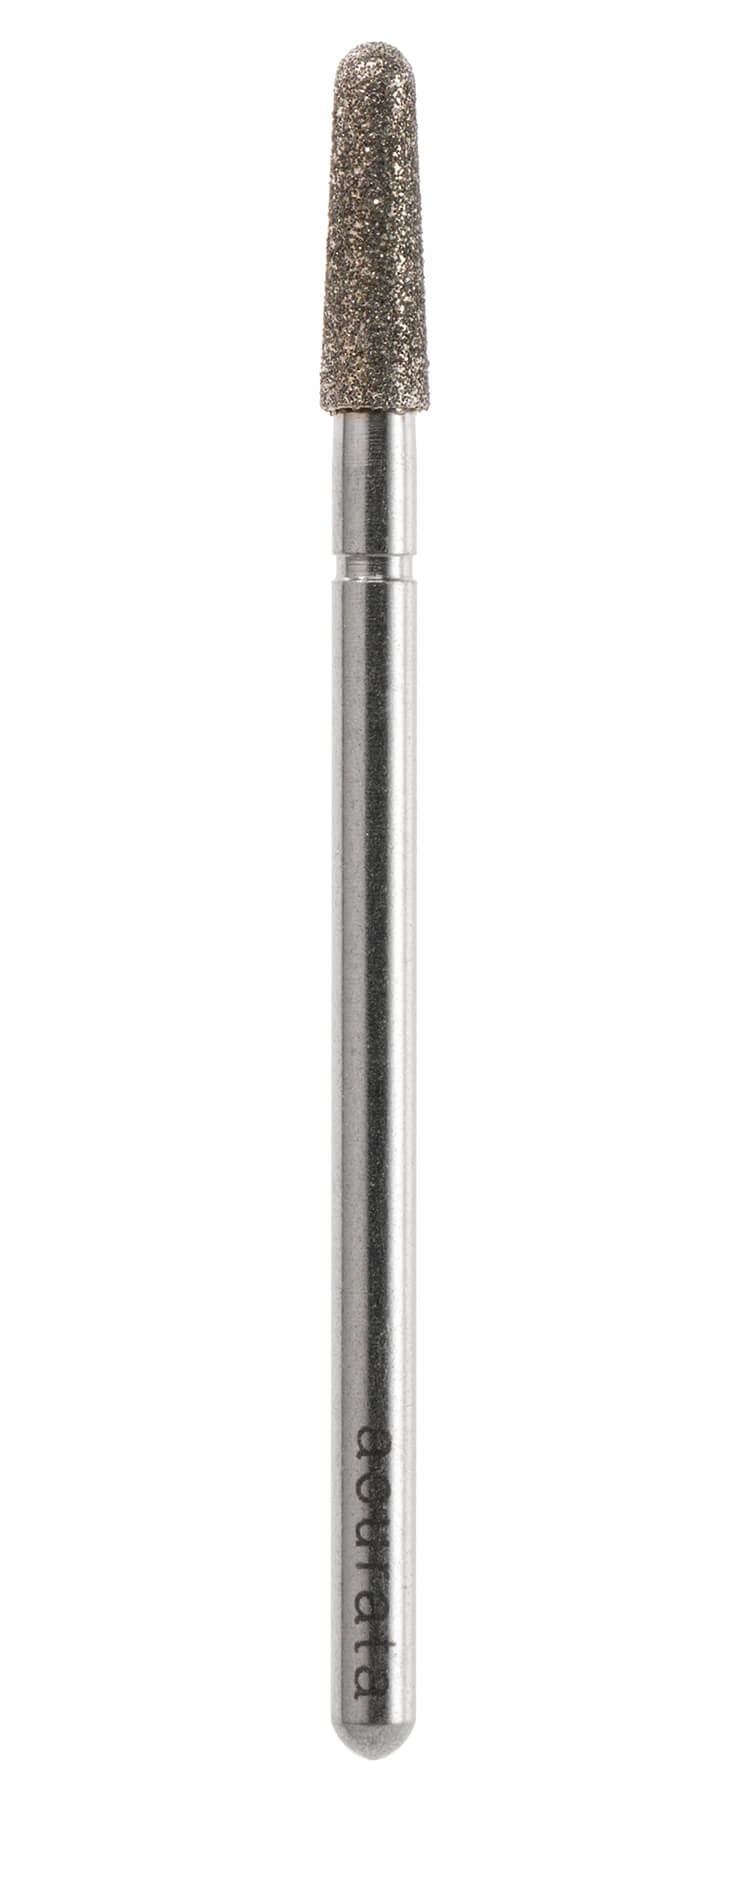 PF-051 - Punta per fresa Diamantata galvanizzata - Grana media - forma cono rotonda - Ø 3.1mm **PF-051**